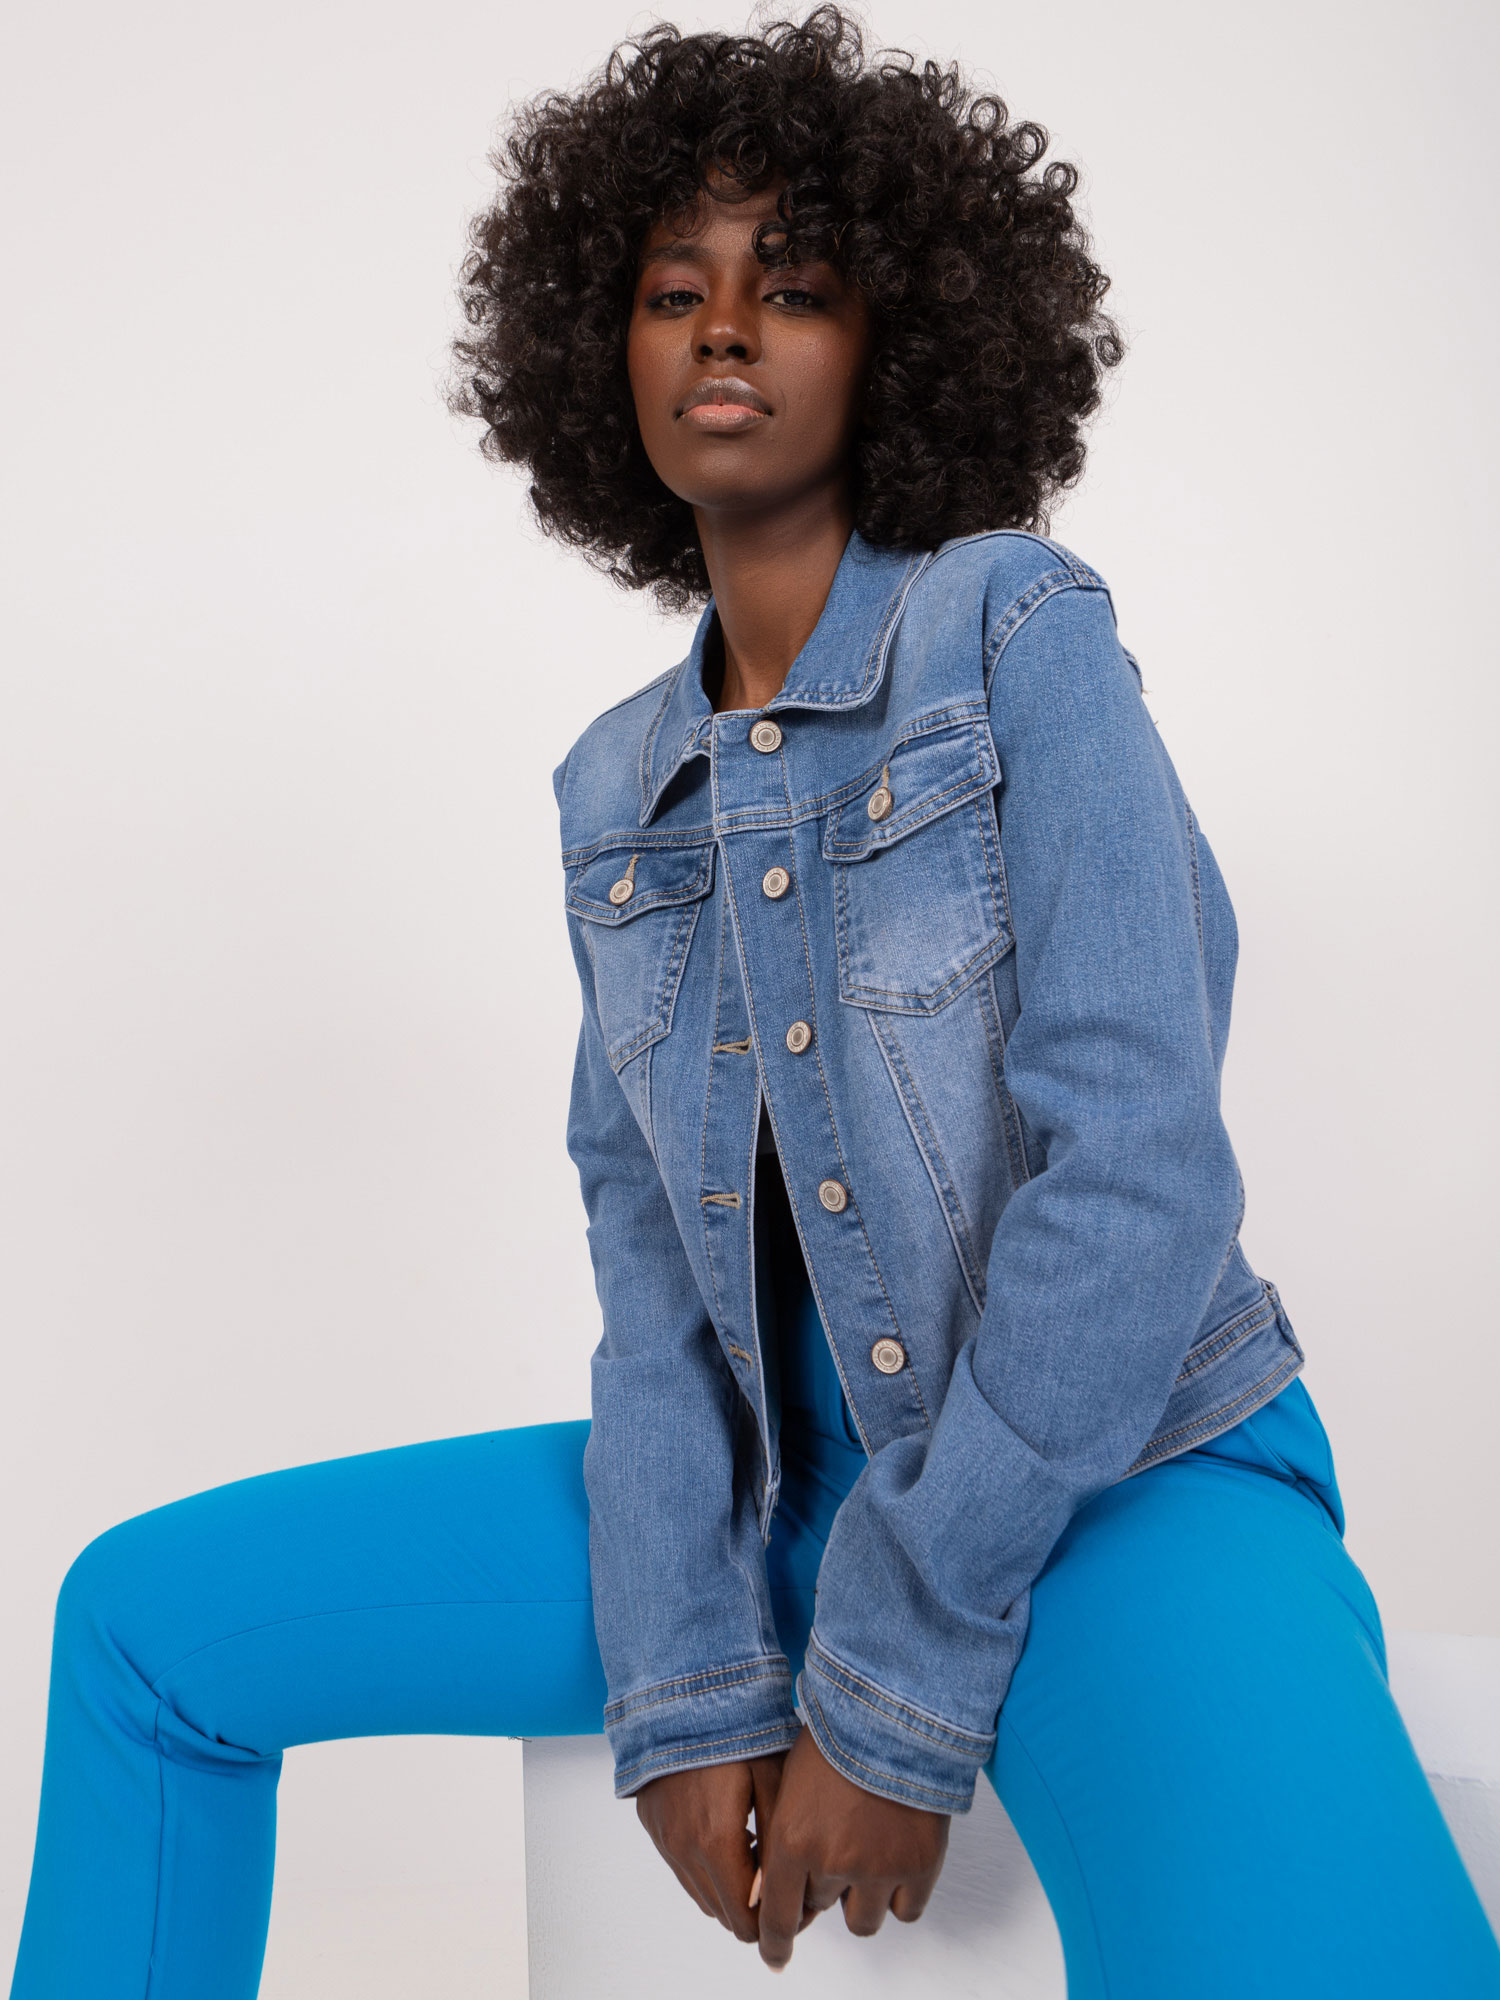 Kurtka jeansowa damska – jak ją stylizować?